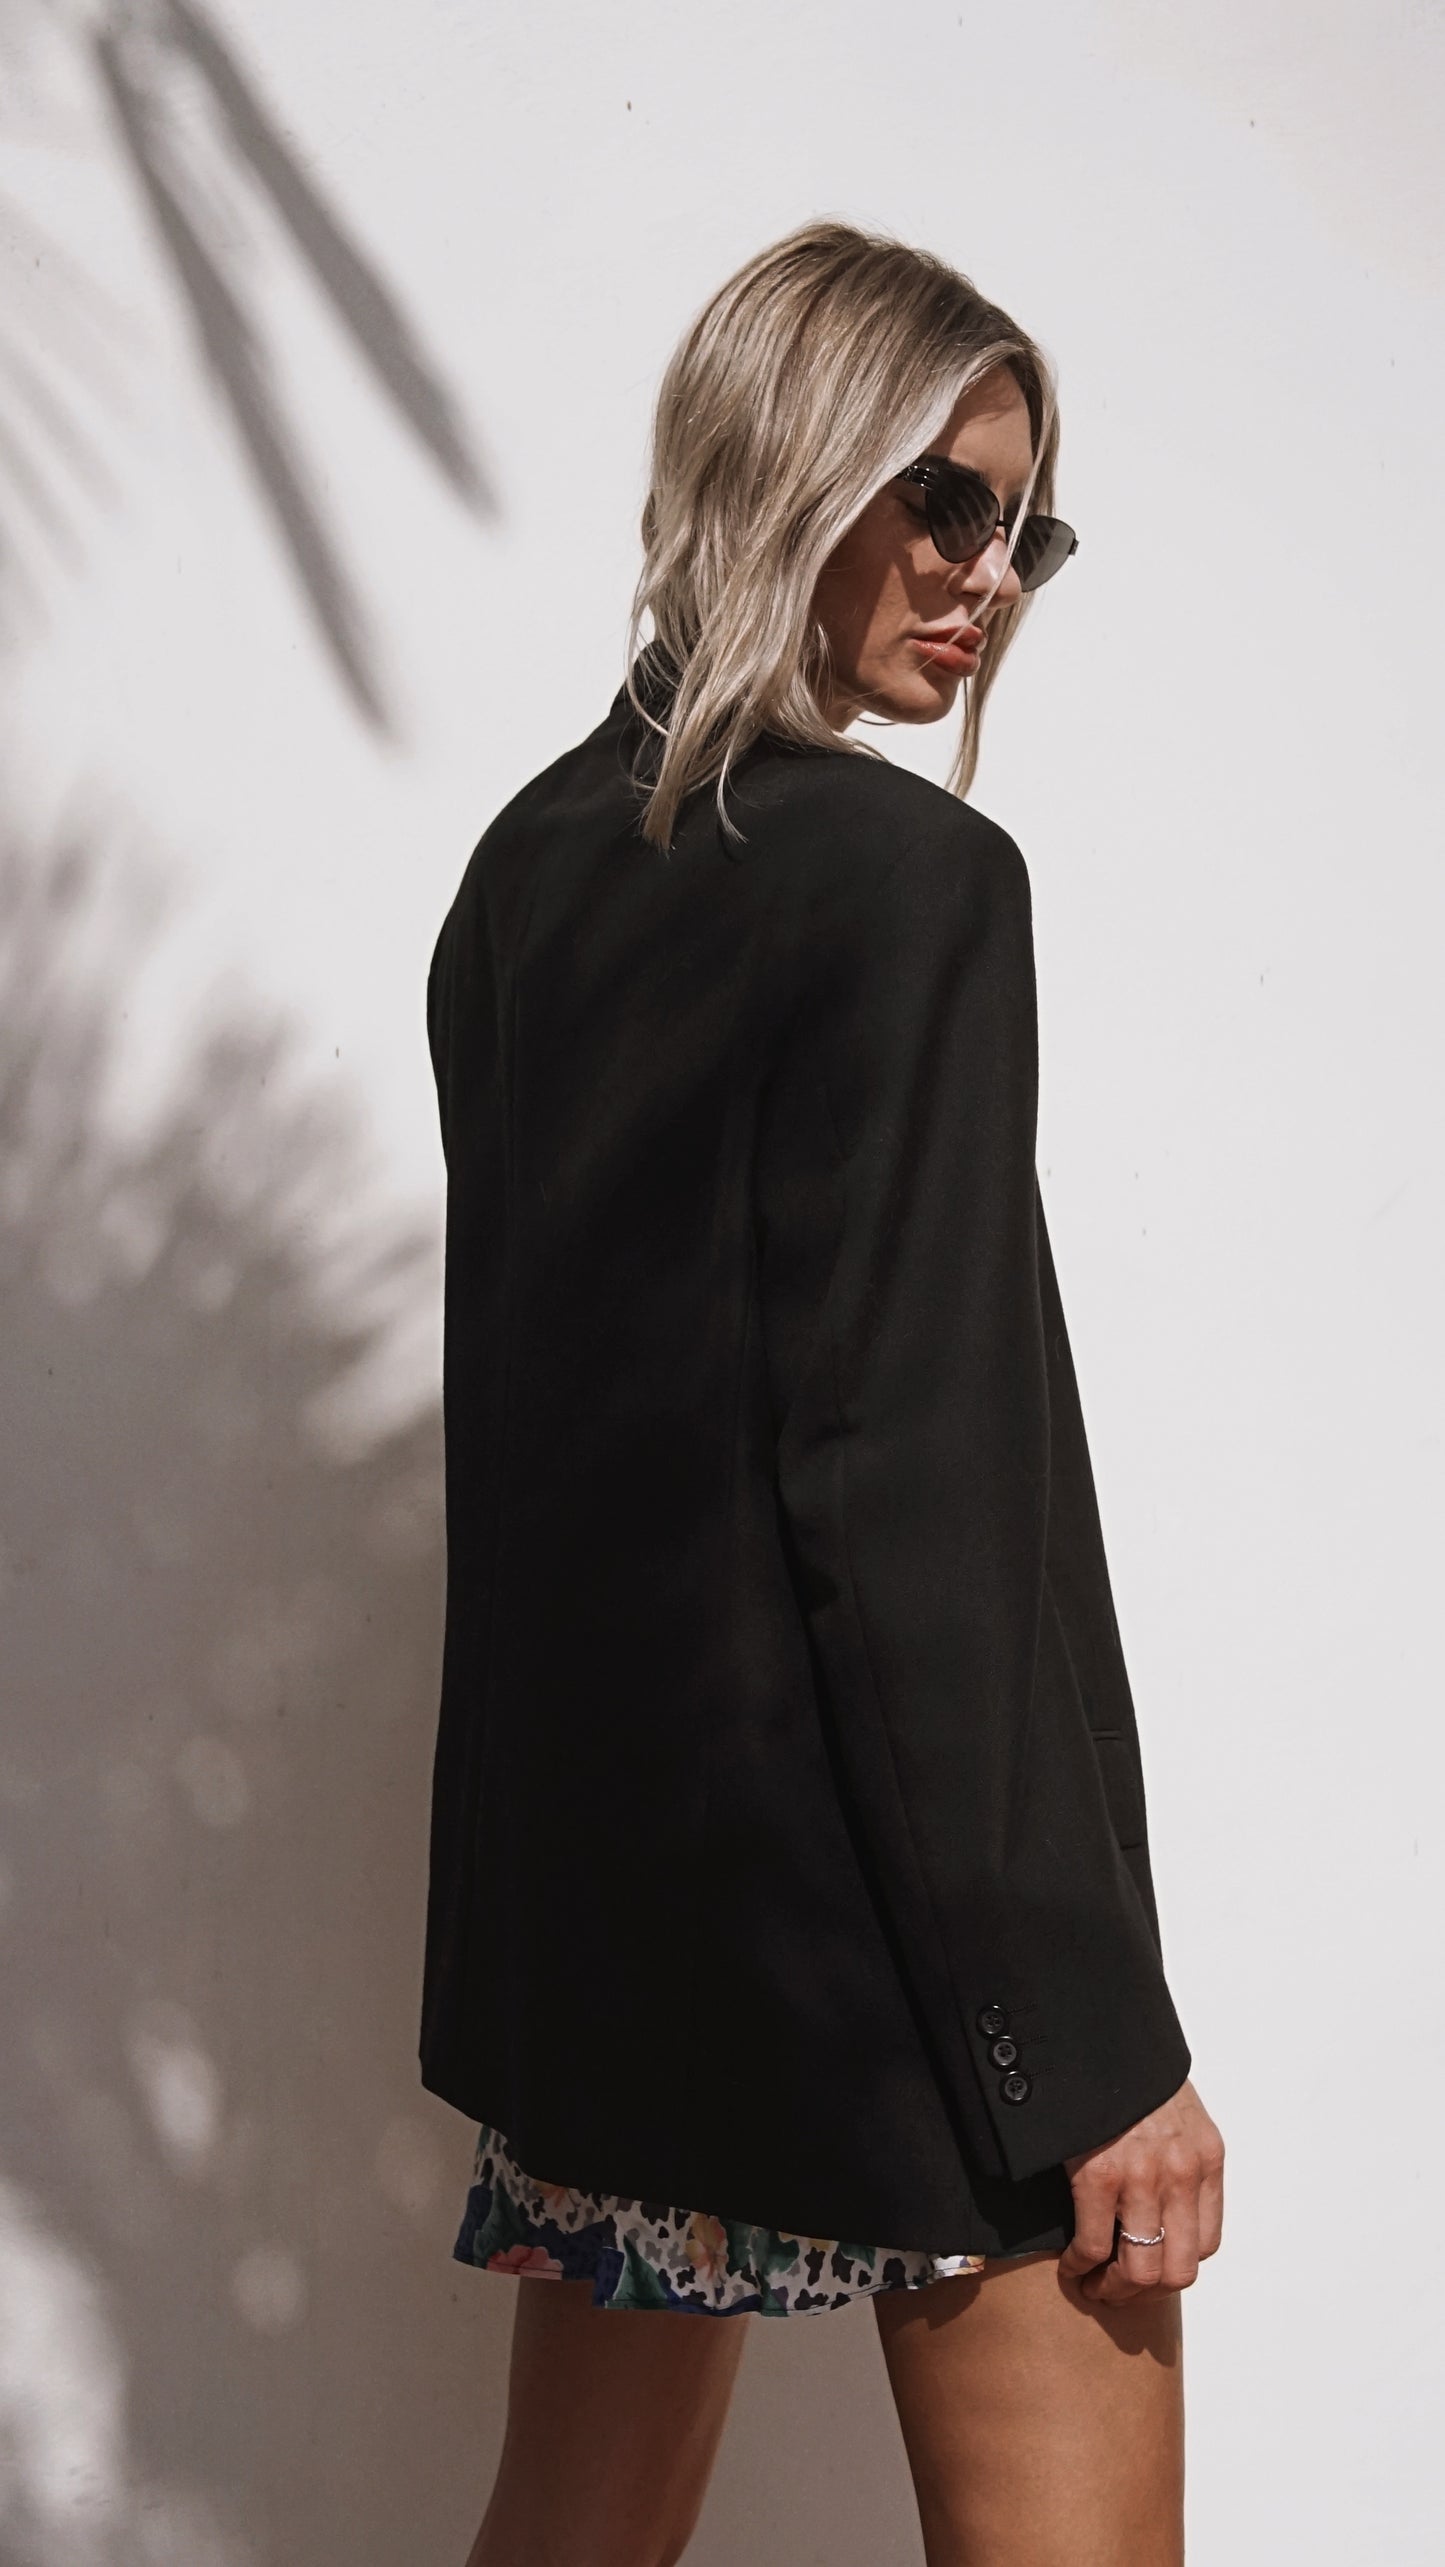 Vintage 90’s Emanuel Ungaro Wool Blazer in Black